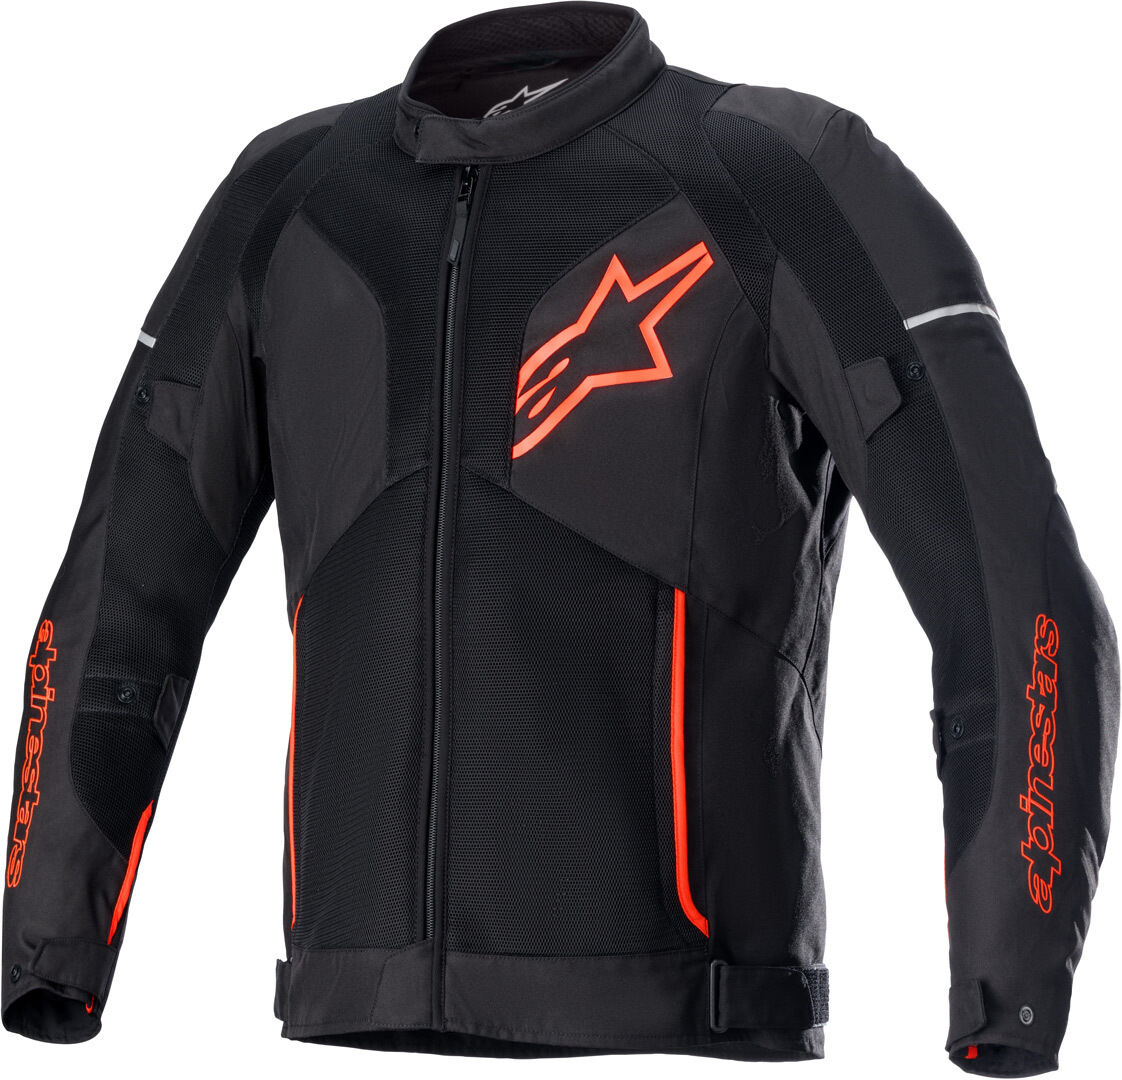 Alpinestars Viper V3 Air Chaqueta textil para motocicleta - Negro Rojo (XL)